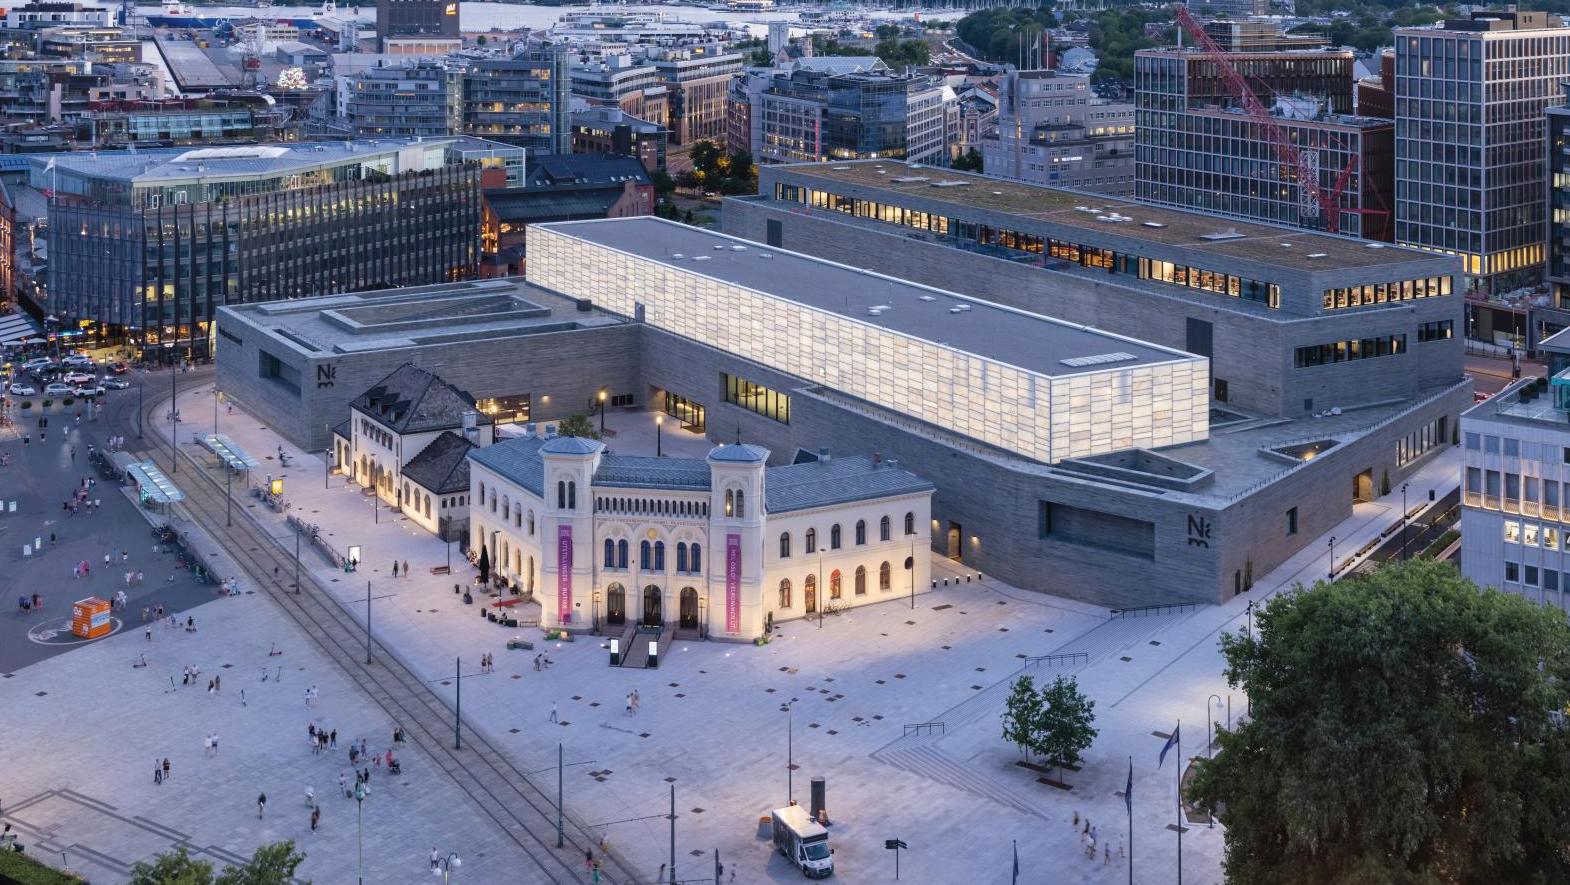 Le musée national d’Art, d’Architecture et de Design de Norvège et l’ancienne gare,... A la découverte du Musée national d’Oslo